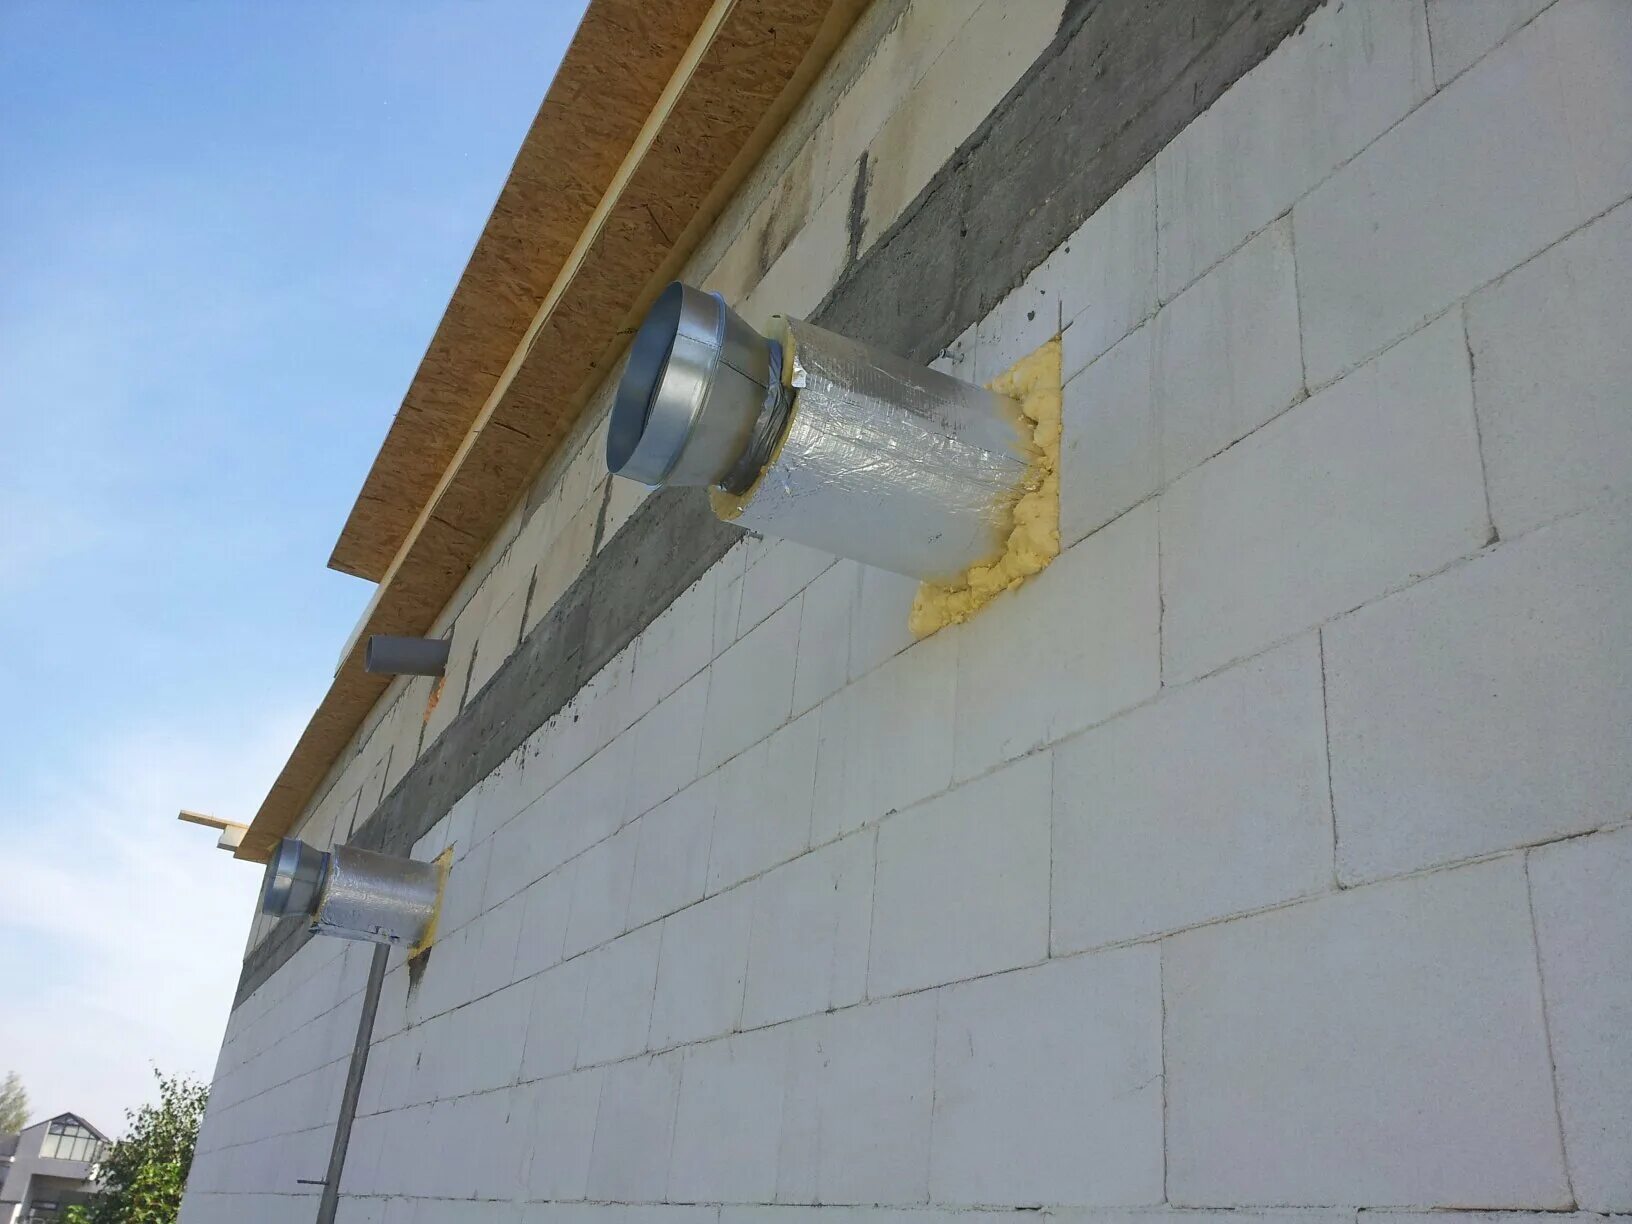 Труба ф150 с утеплителем для вытяжки через стену. Вытяжная труба ф125. Утепленный вентиляционный канал 100. Дымоход Protherm 80 мм, для отвода газов через стену.